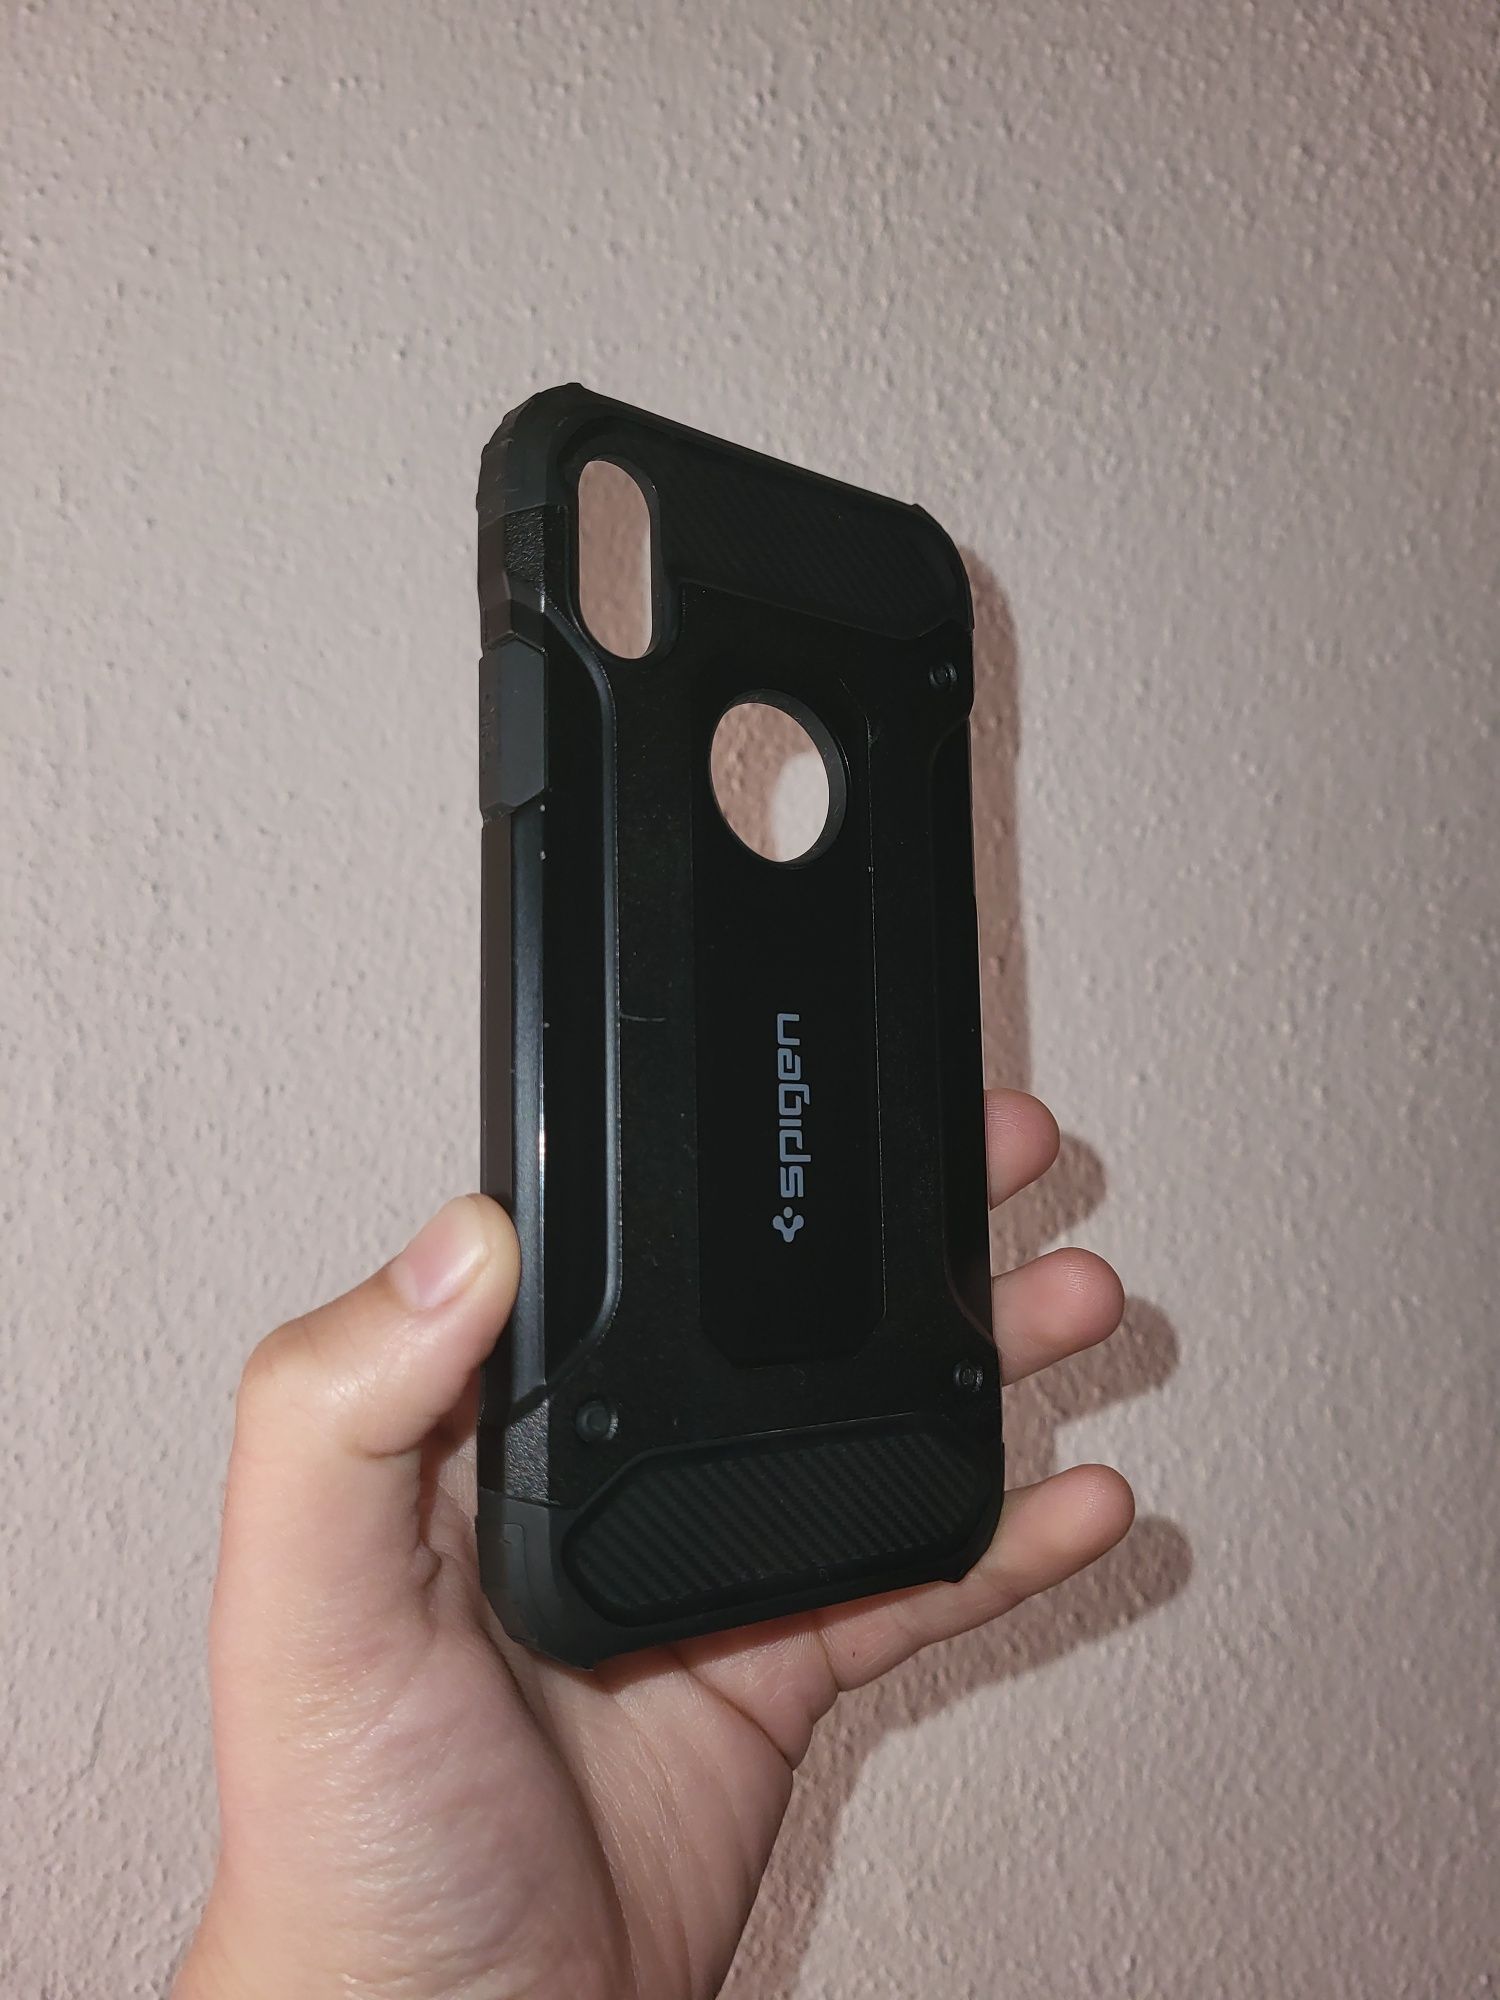 Capa Spigen-Iphone X